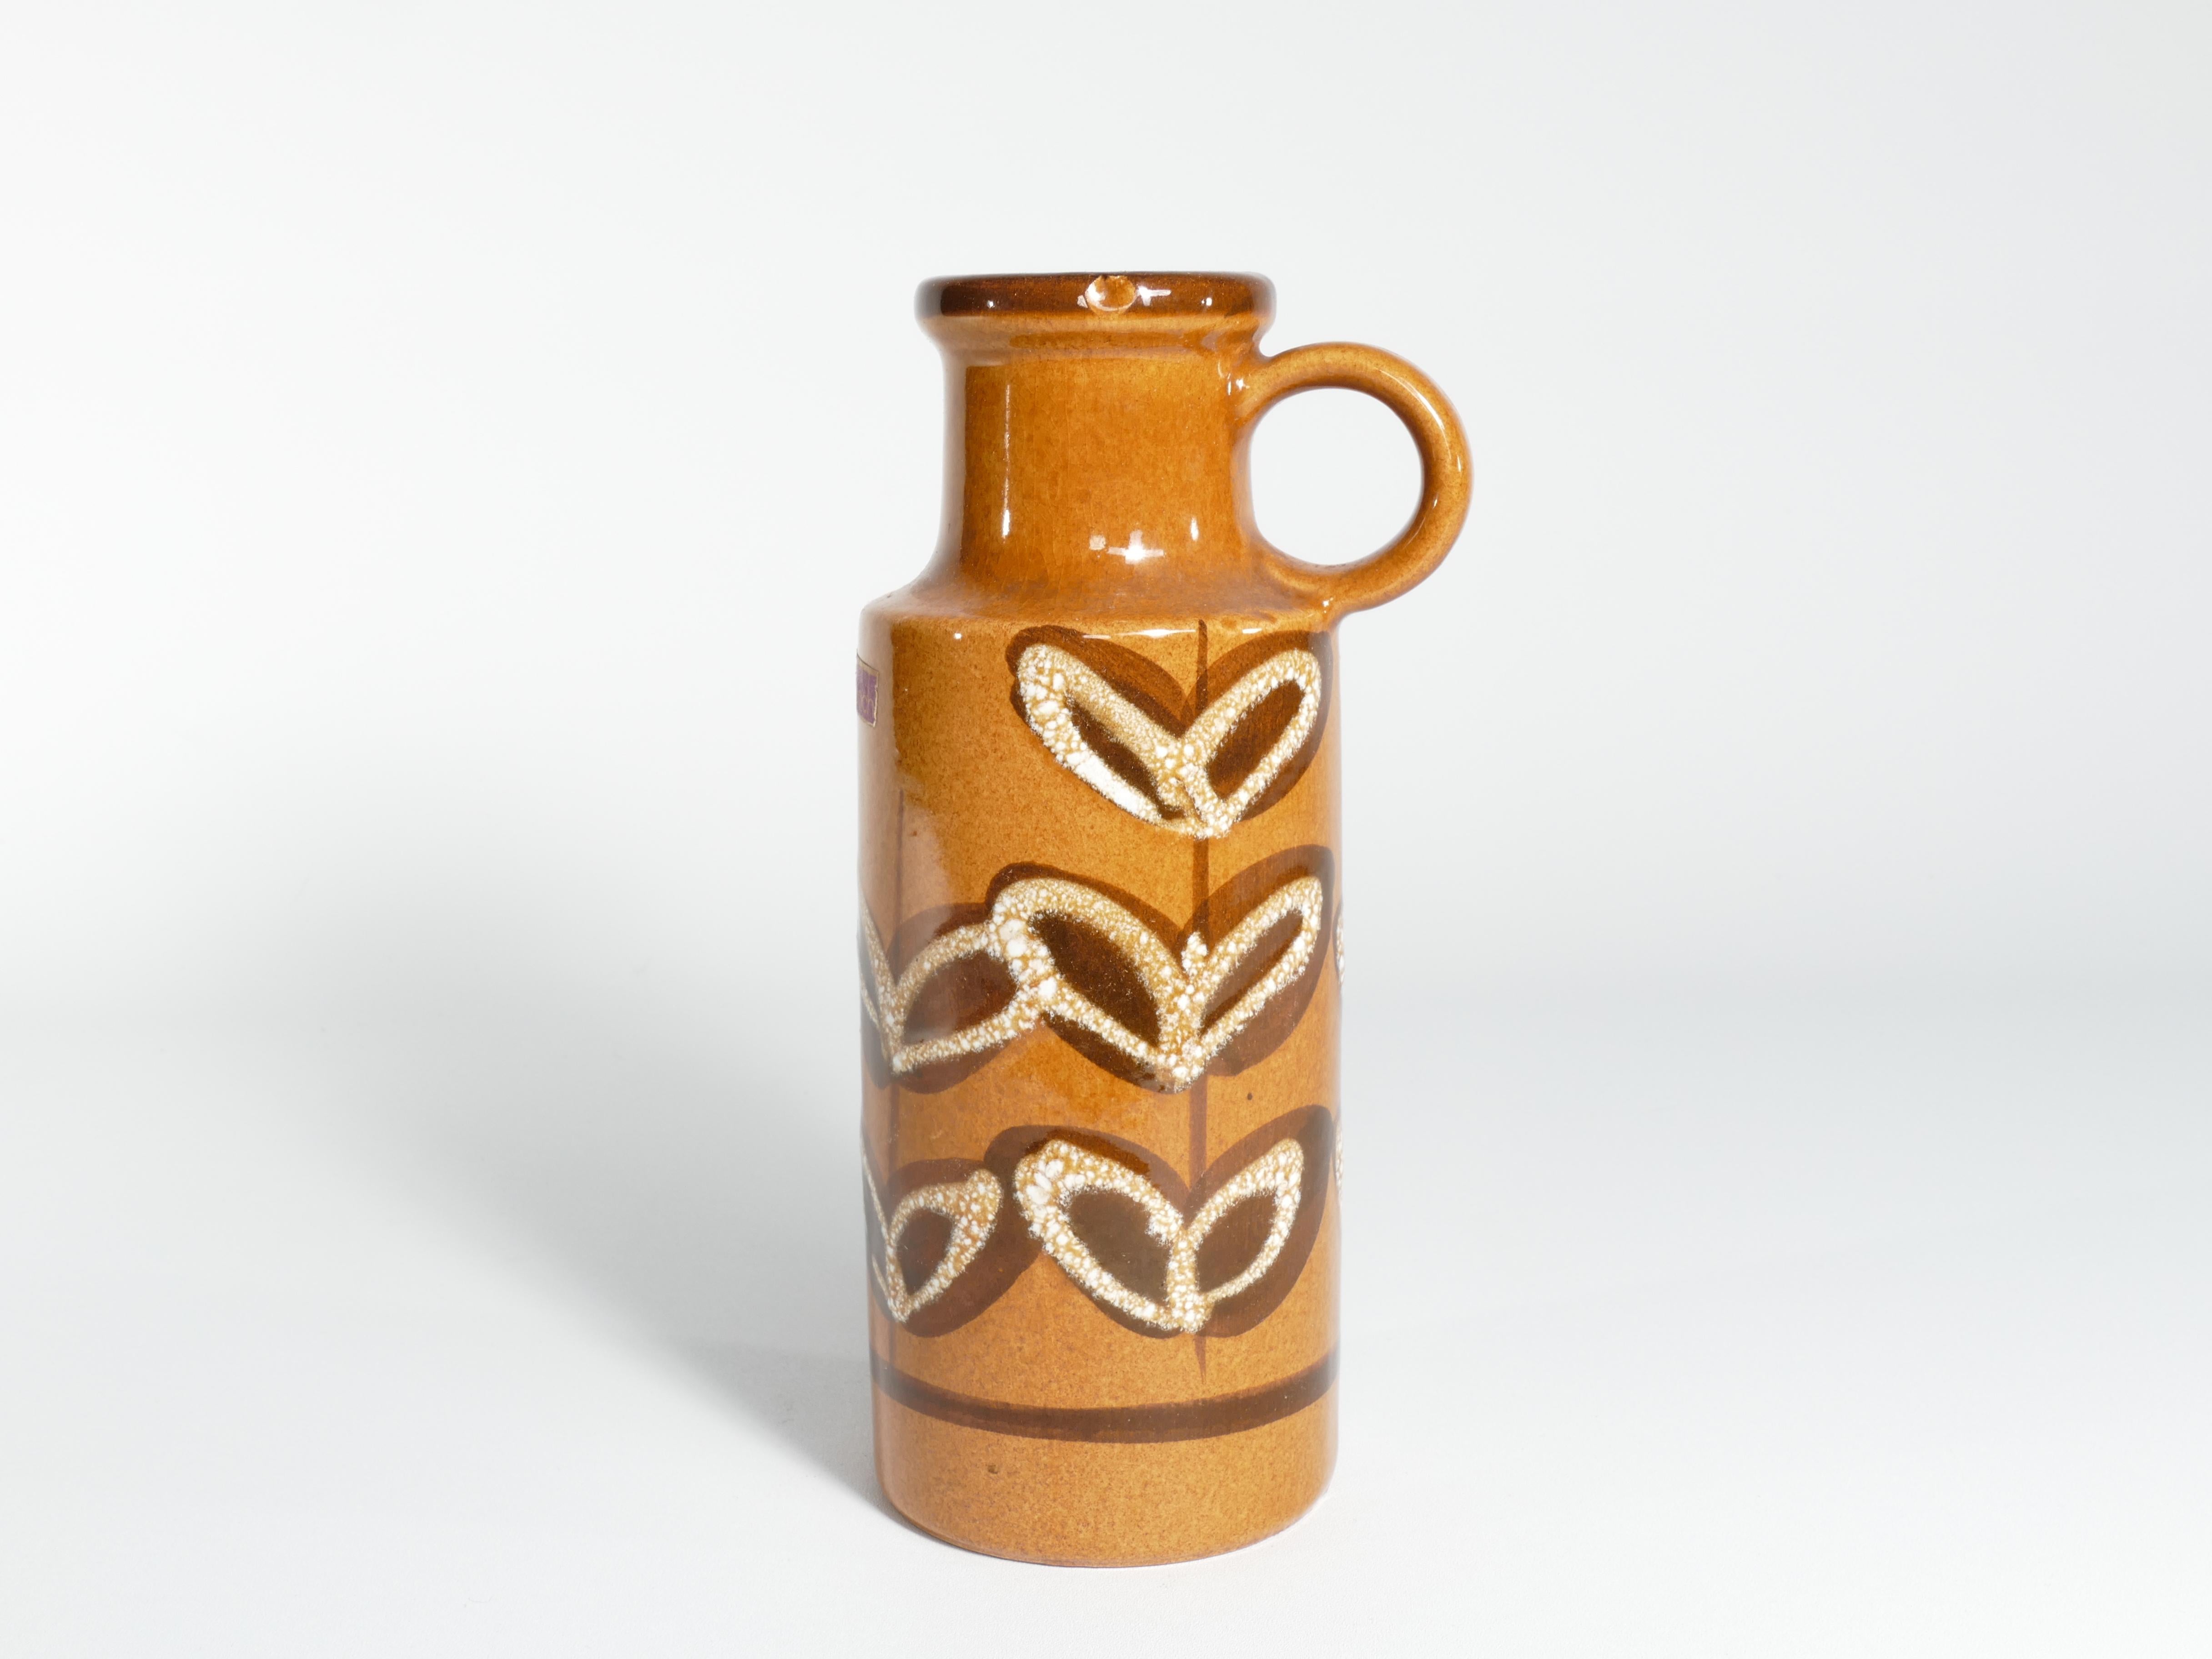 Senfgelbe Vase mit schönen braunen und weißen Blattdetails.
Dies ist ein schönes Beispiel für ein Sammlerstück westdeutscher Kunstkeramik von Scheurich Keramik.

Der Sockel ist mit der Aufschrift 